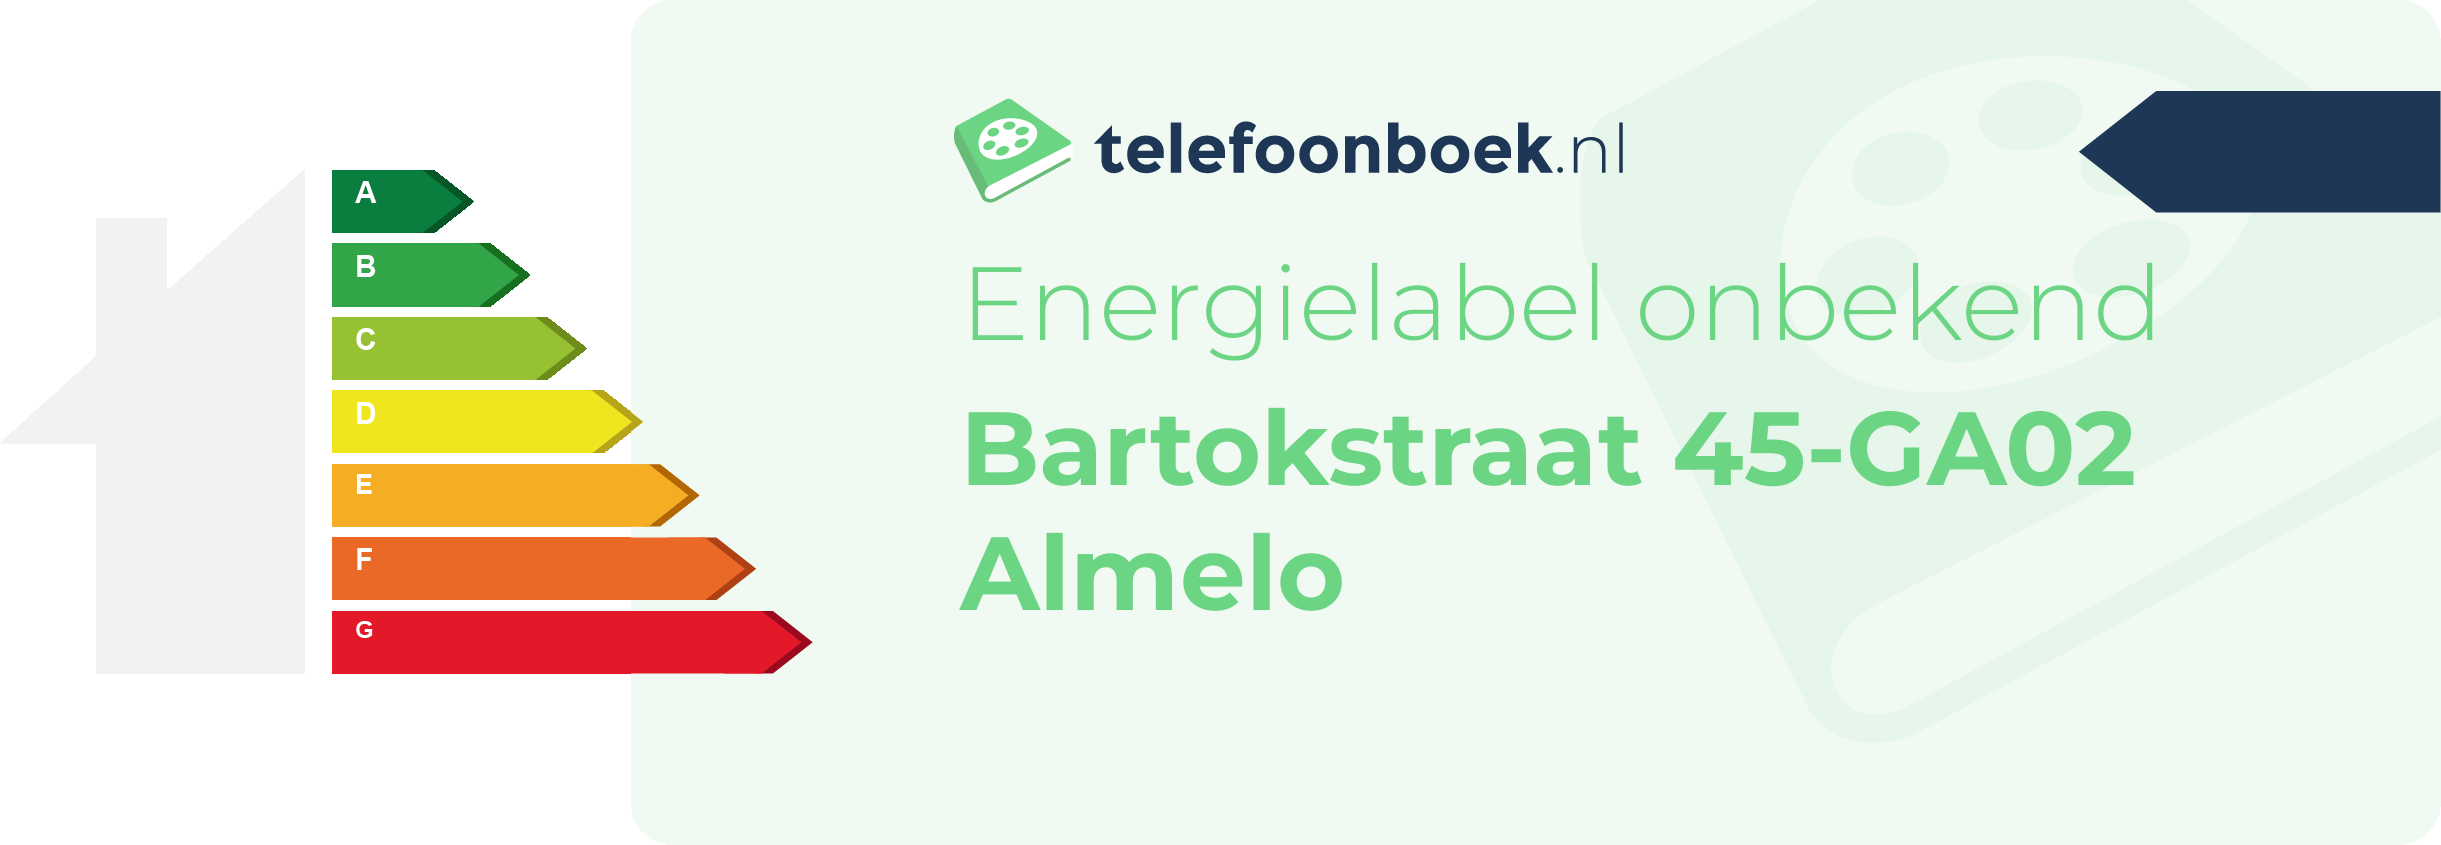 Energielabel Bartokstraat 45-GA02 Almelo